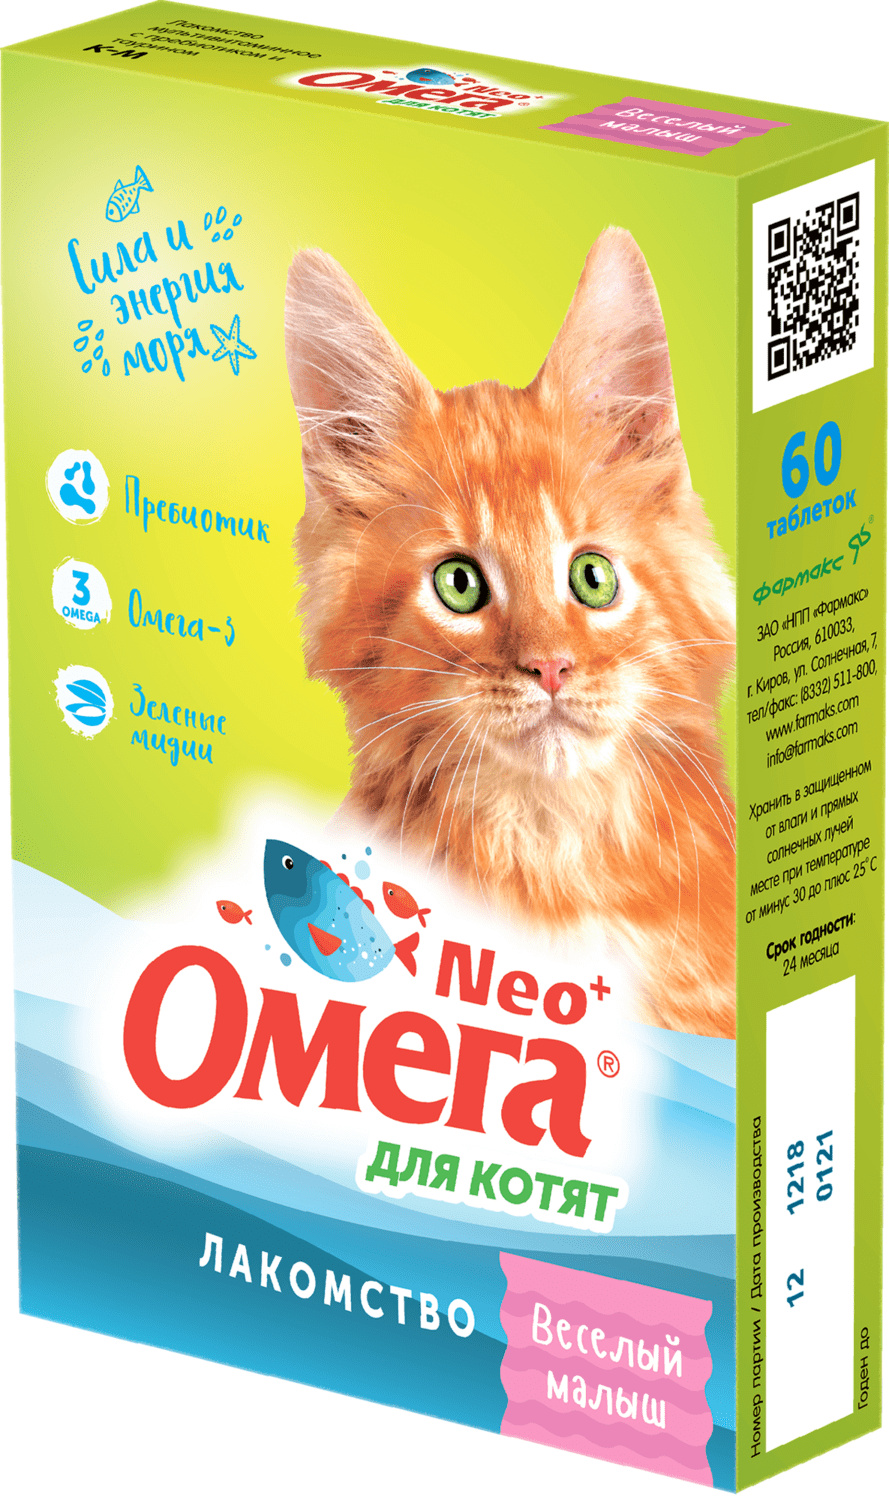 Фармакс Фармакс мультивитаминное лакомство Омега Neo+ Веселый малыш с пребиотиком и таурином для котят (60 г) 34786